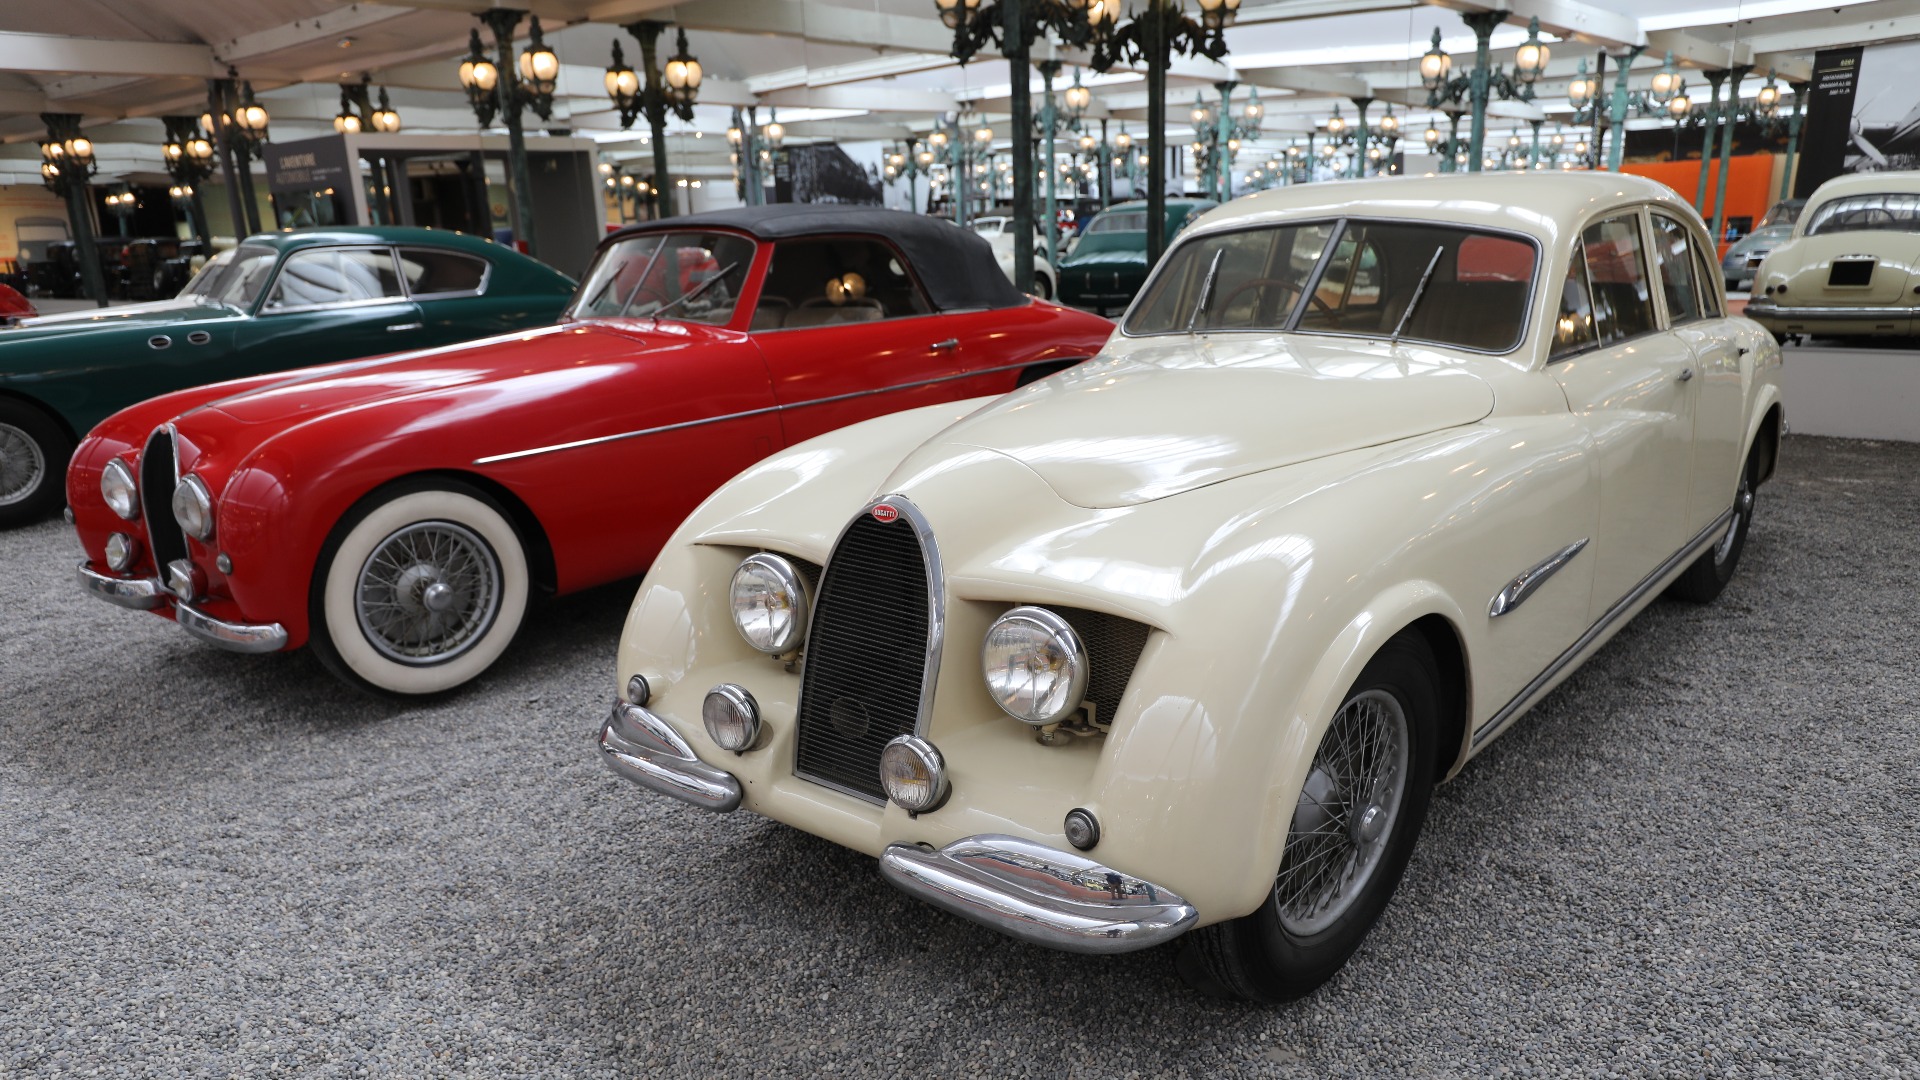 I 1951 viste Bugatti fram Type 101 (en oppgradert Type 57). Museet har tre 101. Her ser vi en 101 Cabriolet, mens den hvite er prototypen til den såkalte Type 101 La Berline. Den ble aldri solgt og endte opp hos Bugattis direktør Francois Seyfried i 1961, før han igjen solgte den til Fritz Schlumpf i 1963. 